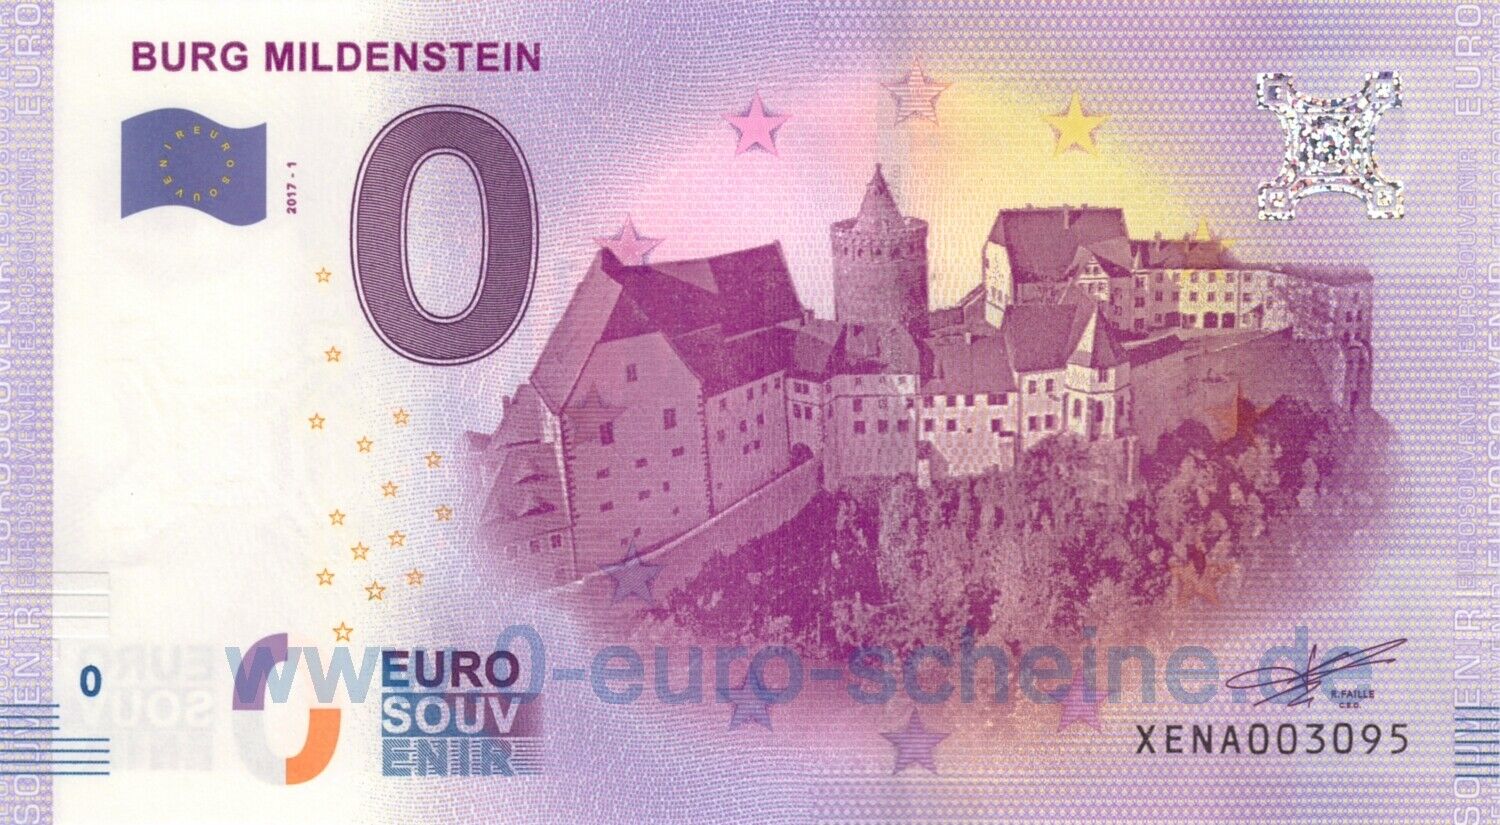 🅾️ Burg Mildenstein ◾ XENA 2017-1 ◾ 0 Euro banknot Zero O€ Souvenir O UNC